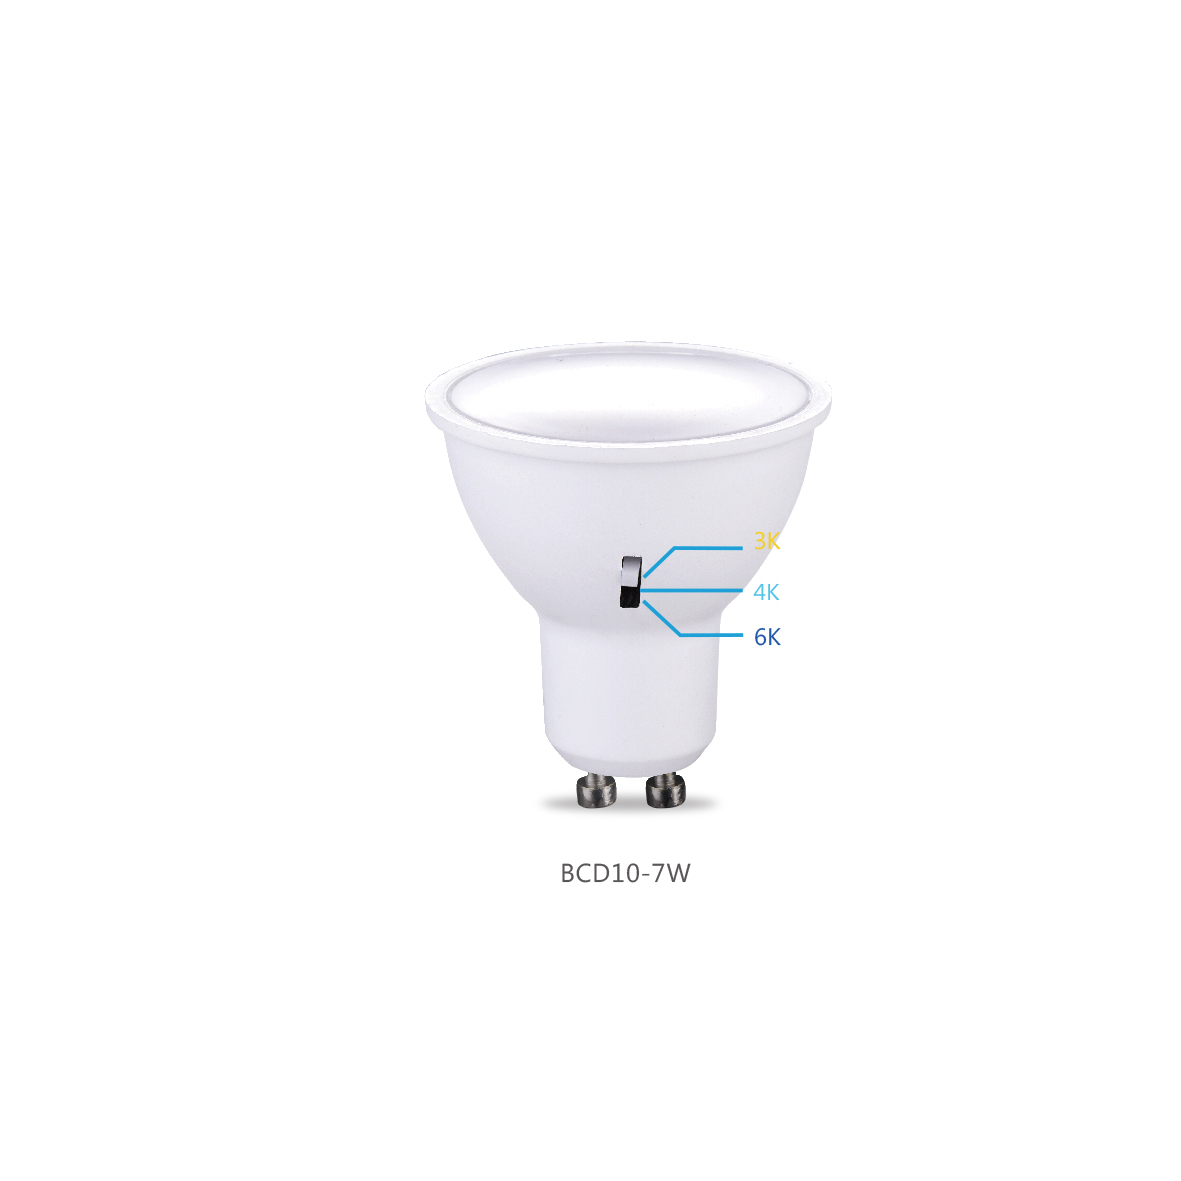 LED LAMP BULB(3CCT)